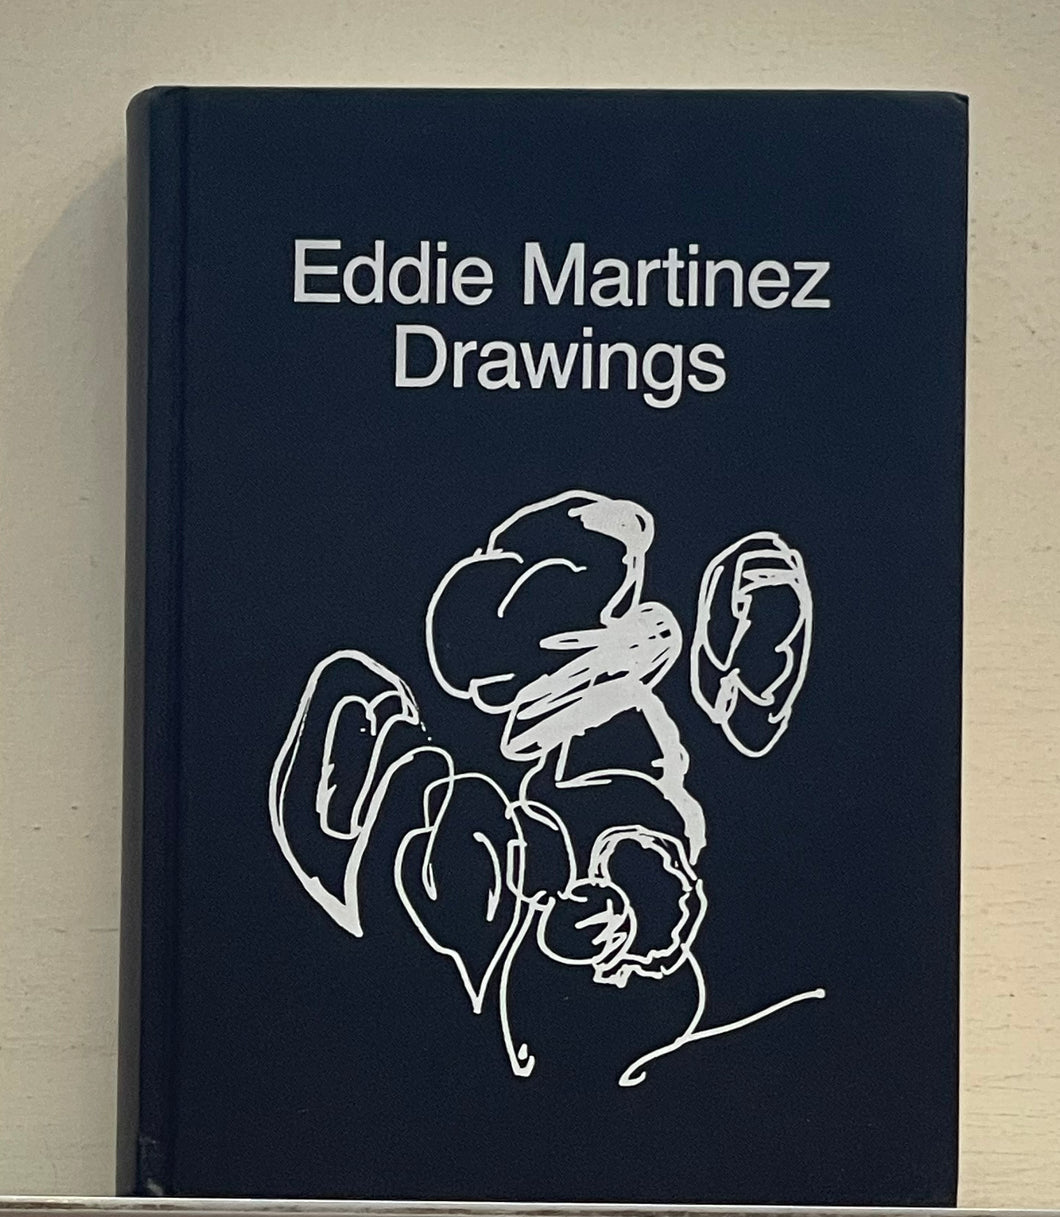 Eddie Martinez Drawings **SIGNED**